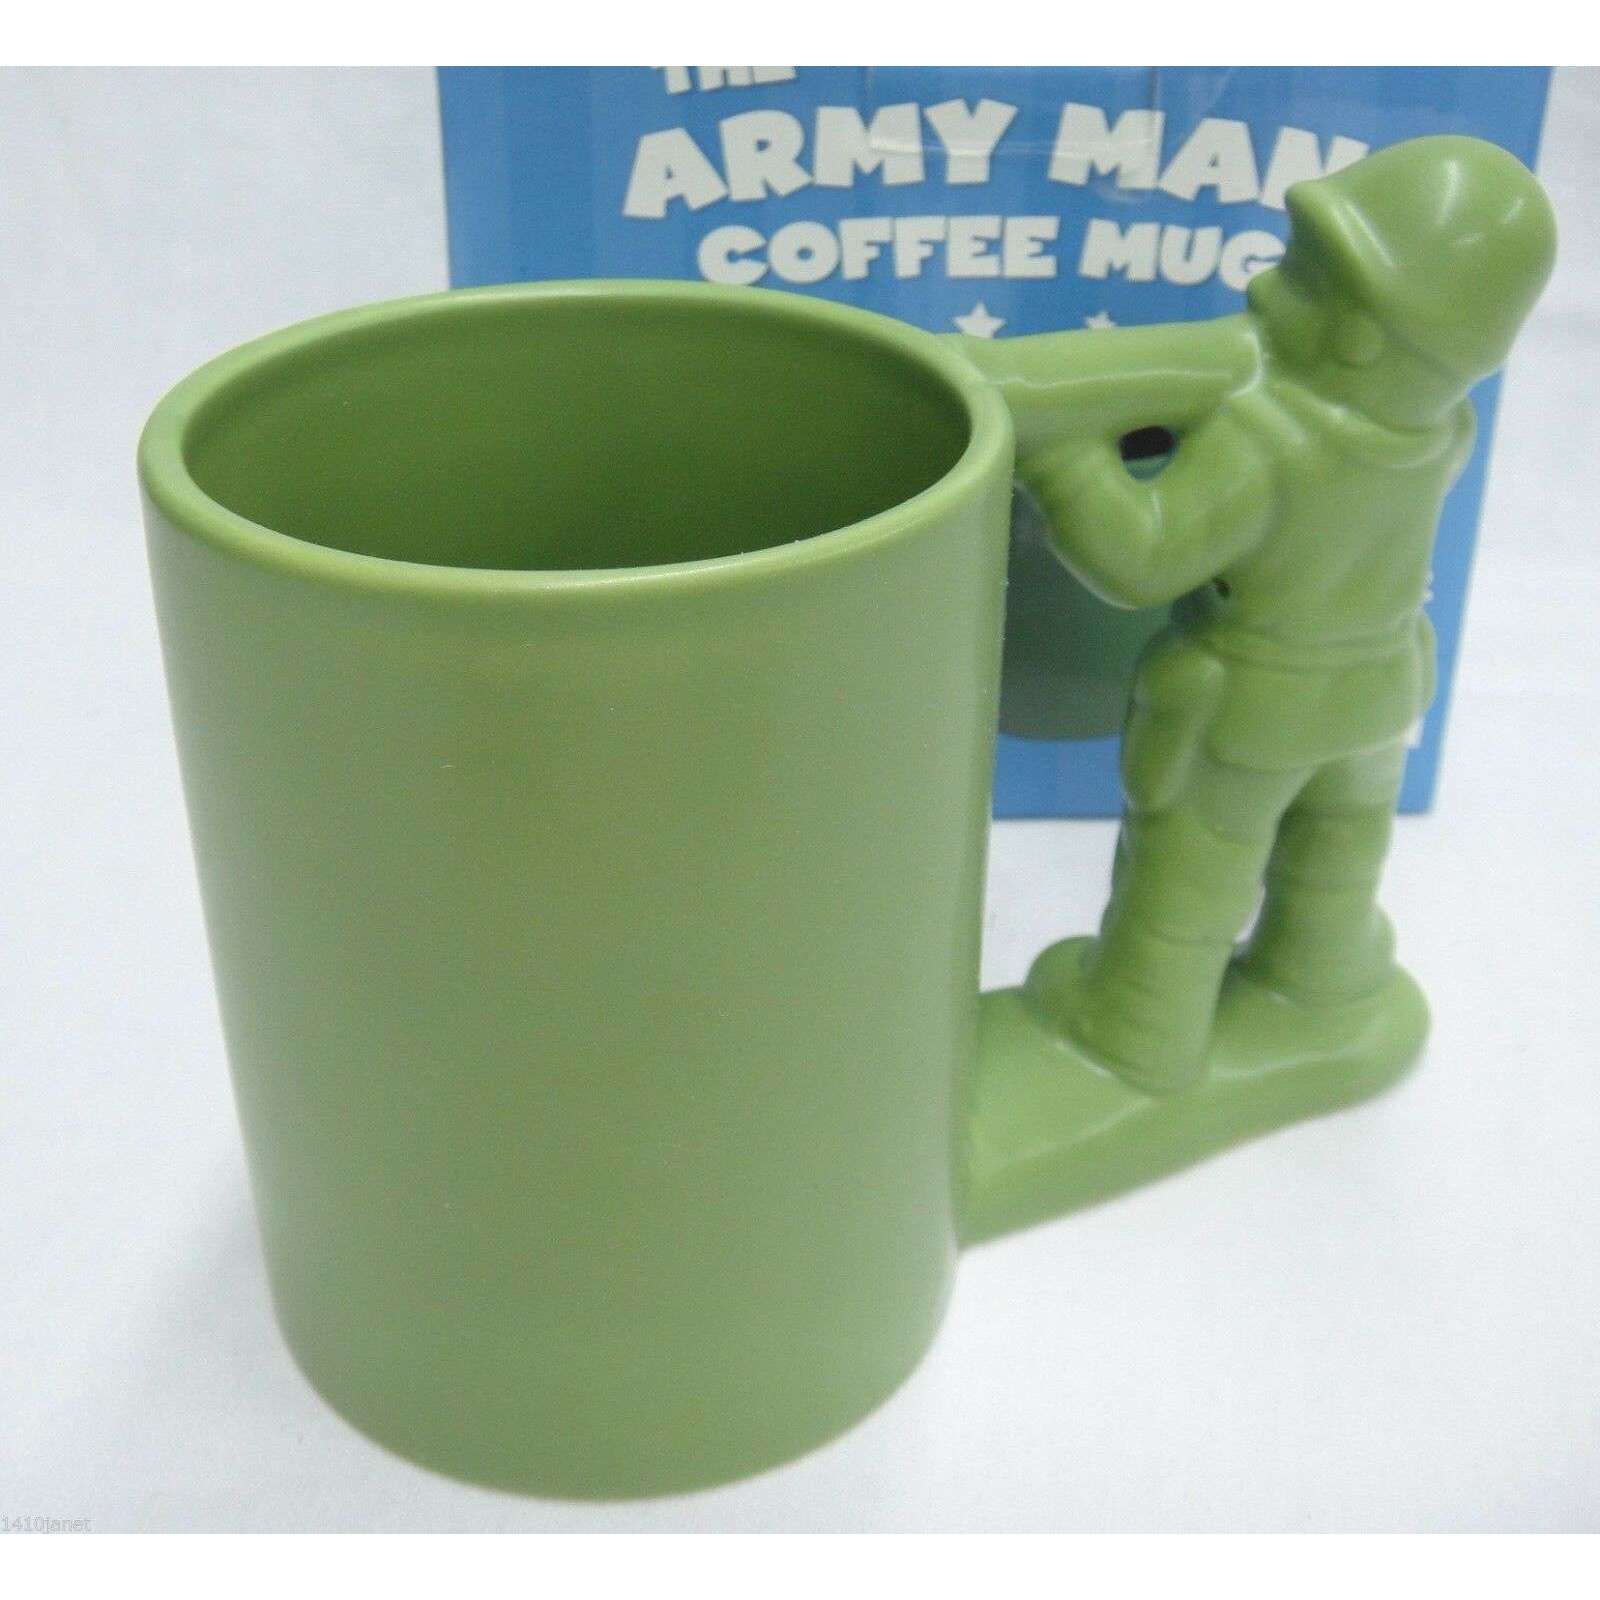 Army Man Mug